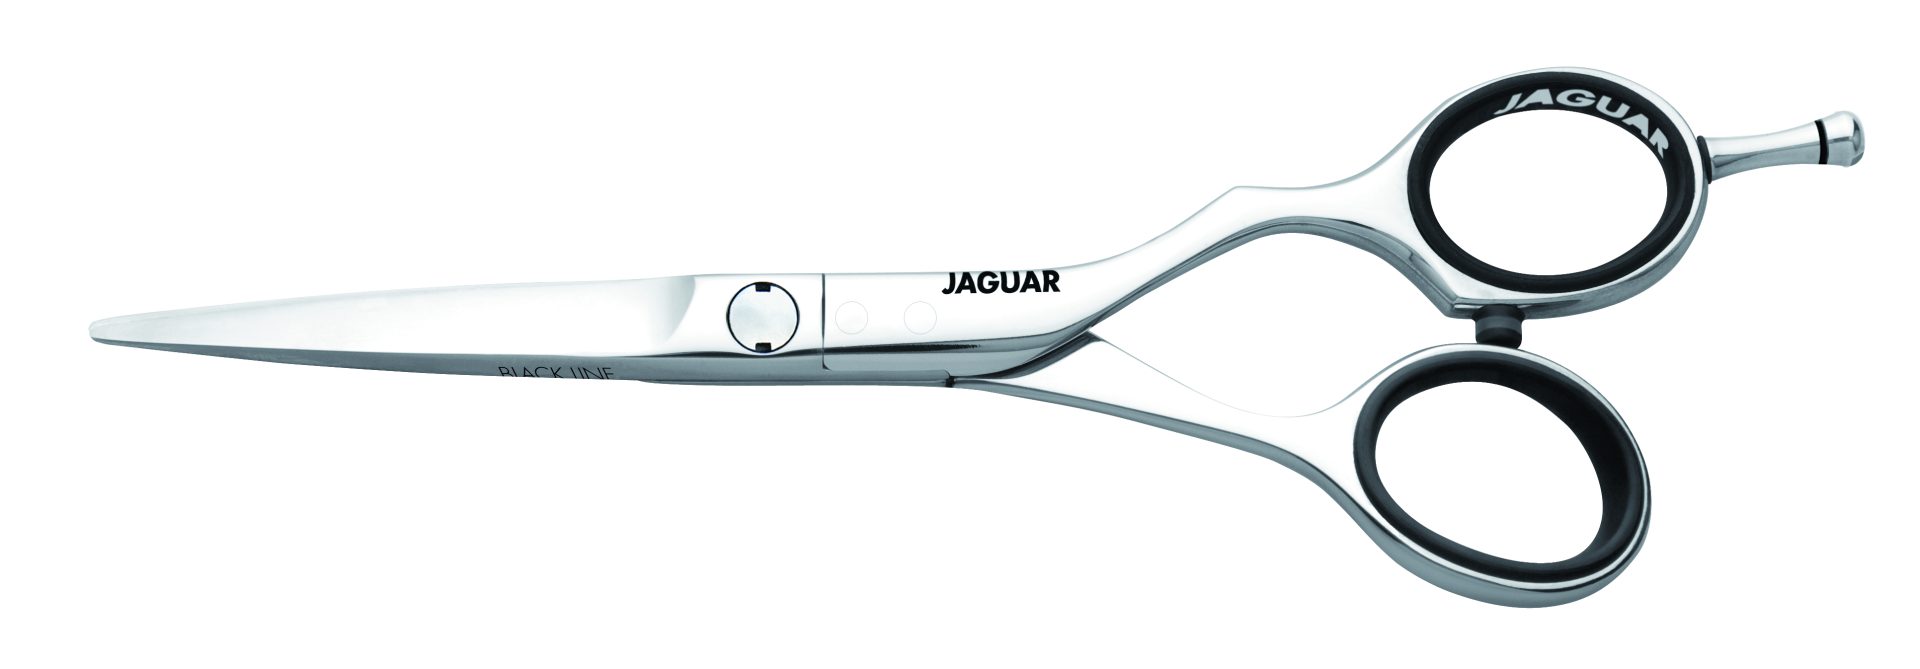 jaguar scissors euro tech